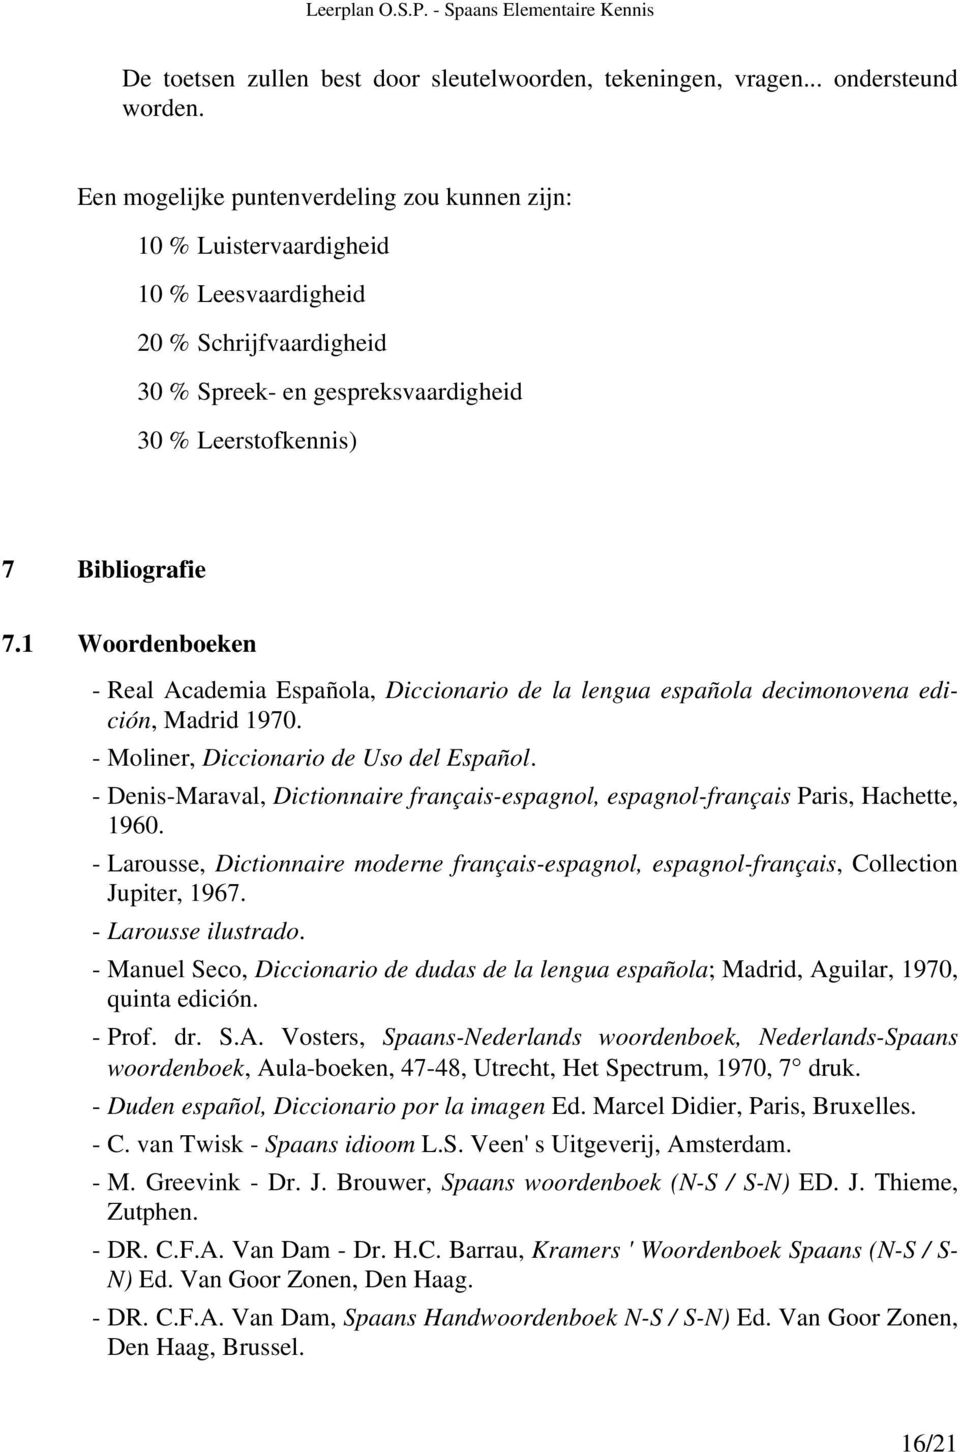 1 Woordenboeken - Real Academia Española, Diccionario de la lengua española decimonovena edición, Madrid 1970. - Moliner, Diccionario de Uso del Español.